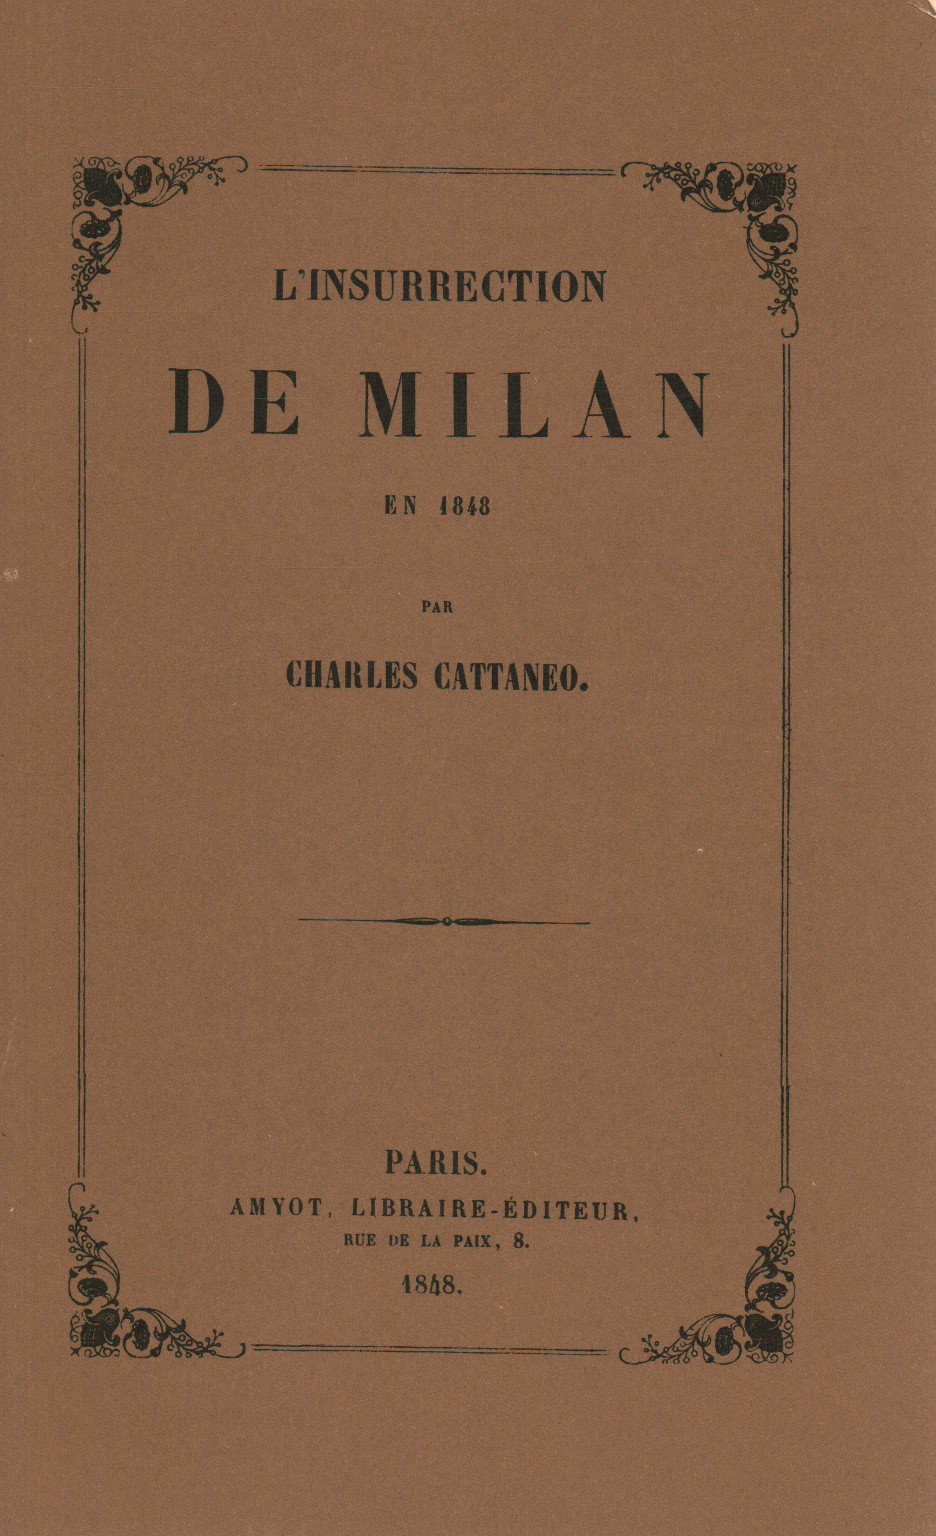 L'insurrección de Milán en 1848, s.a.